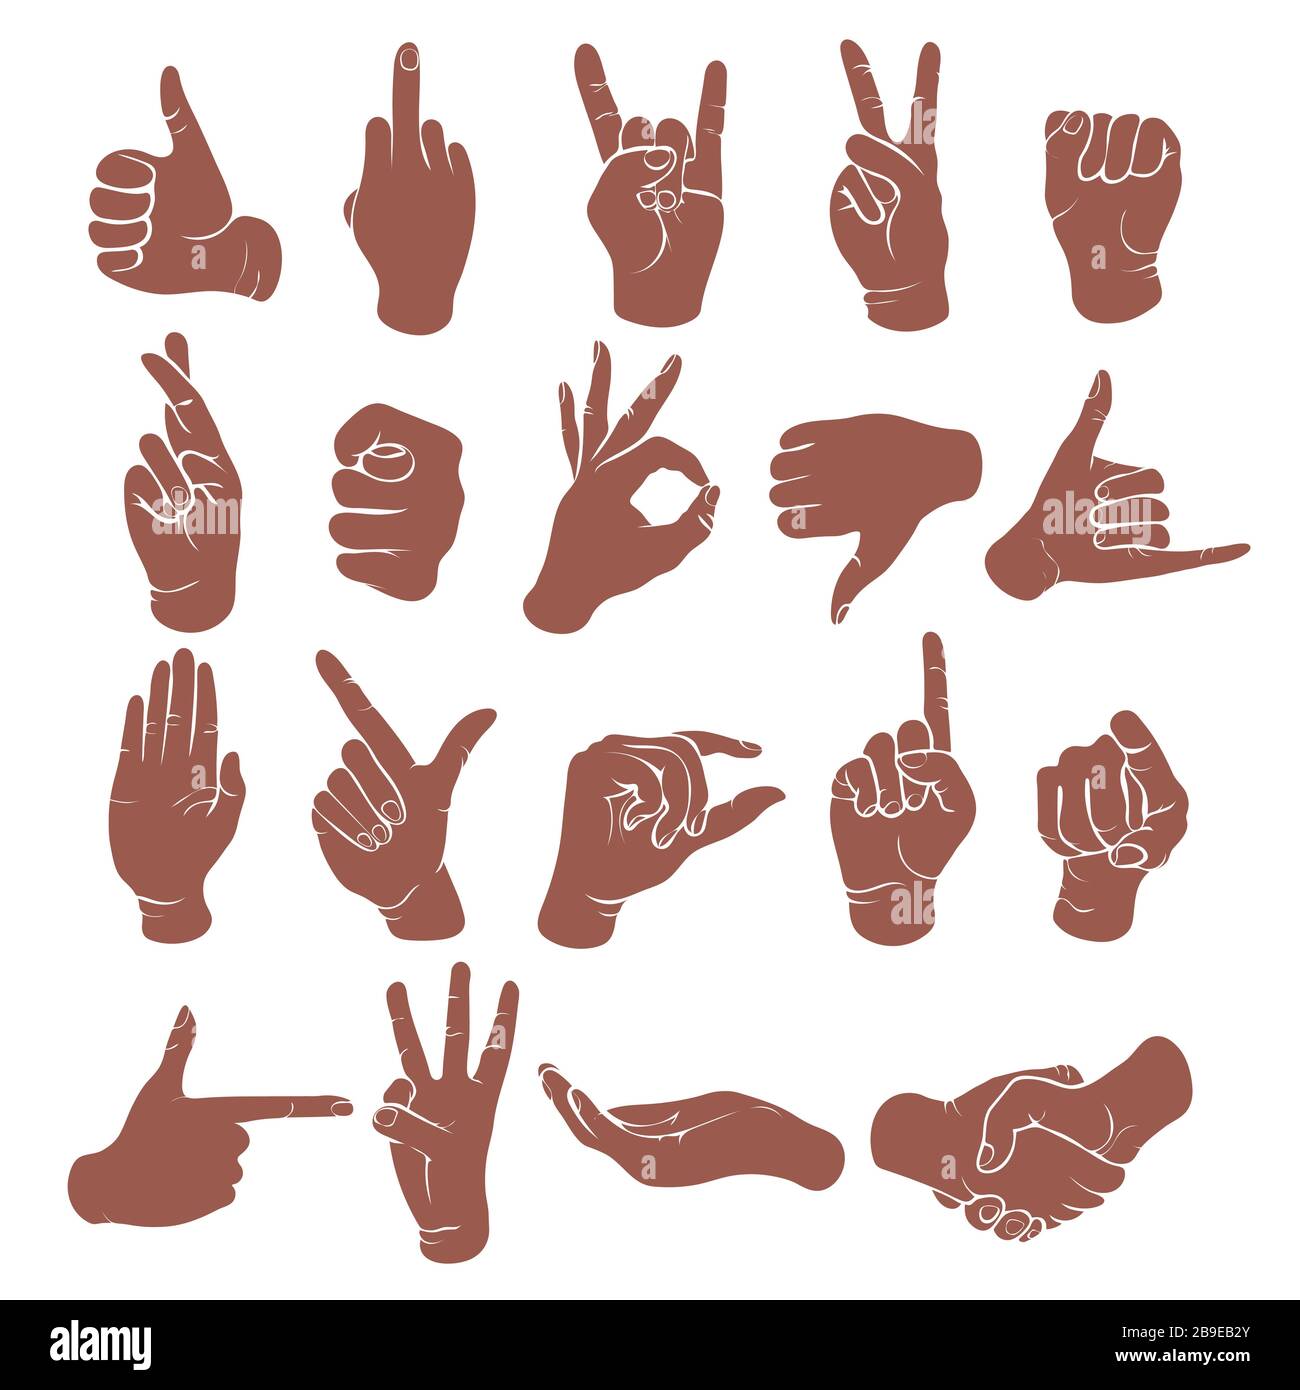 Handgesten, Fingerabdrücke, Zeichensymbole, Schablone, Logo, Silhouette. Monochrome Zeichnung des Handgelenks, Hände mit verschiedenen klassischen Symbolisolen Stock Vektor